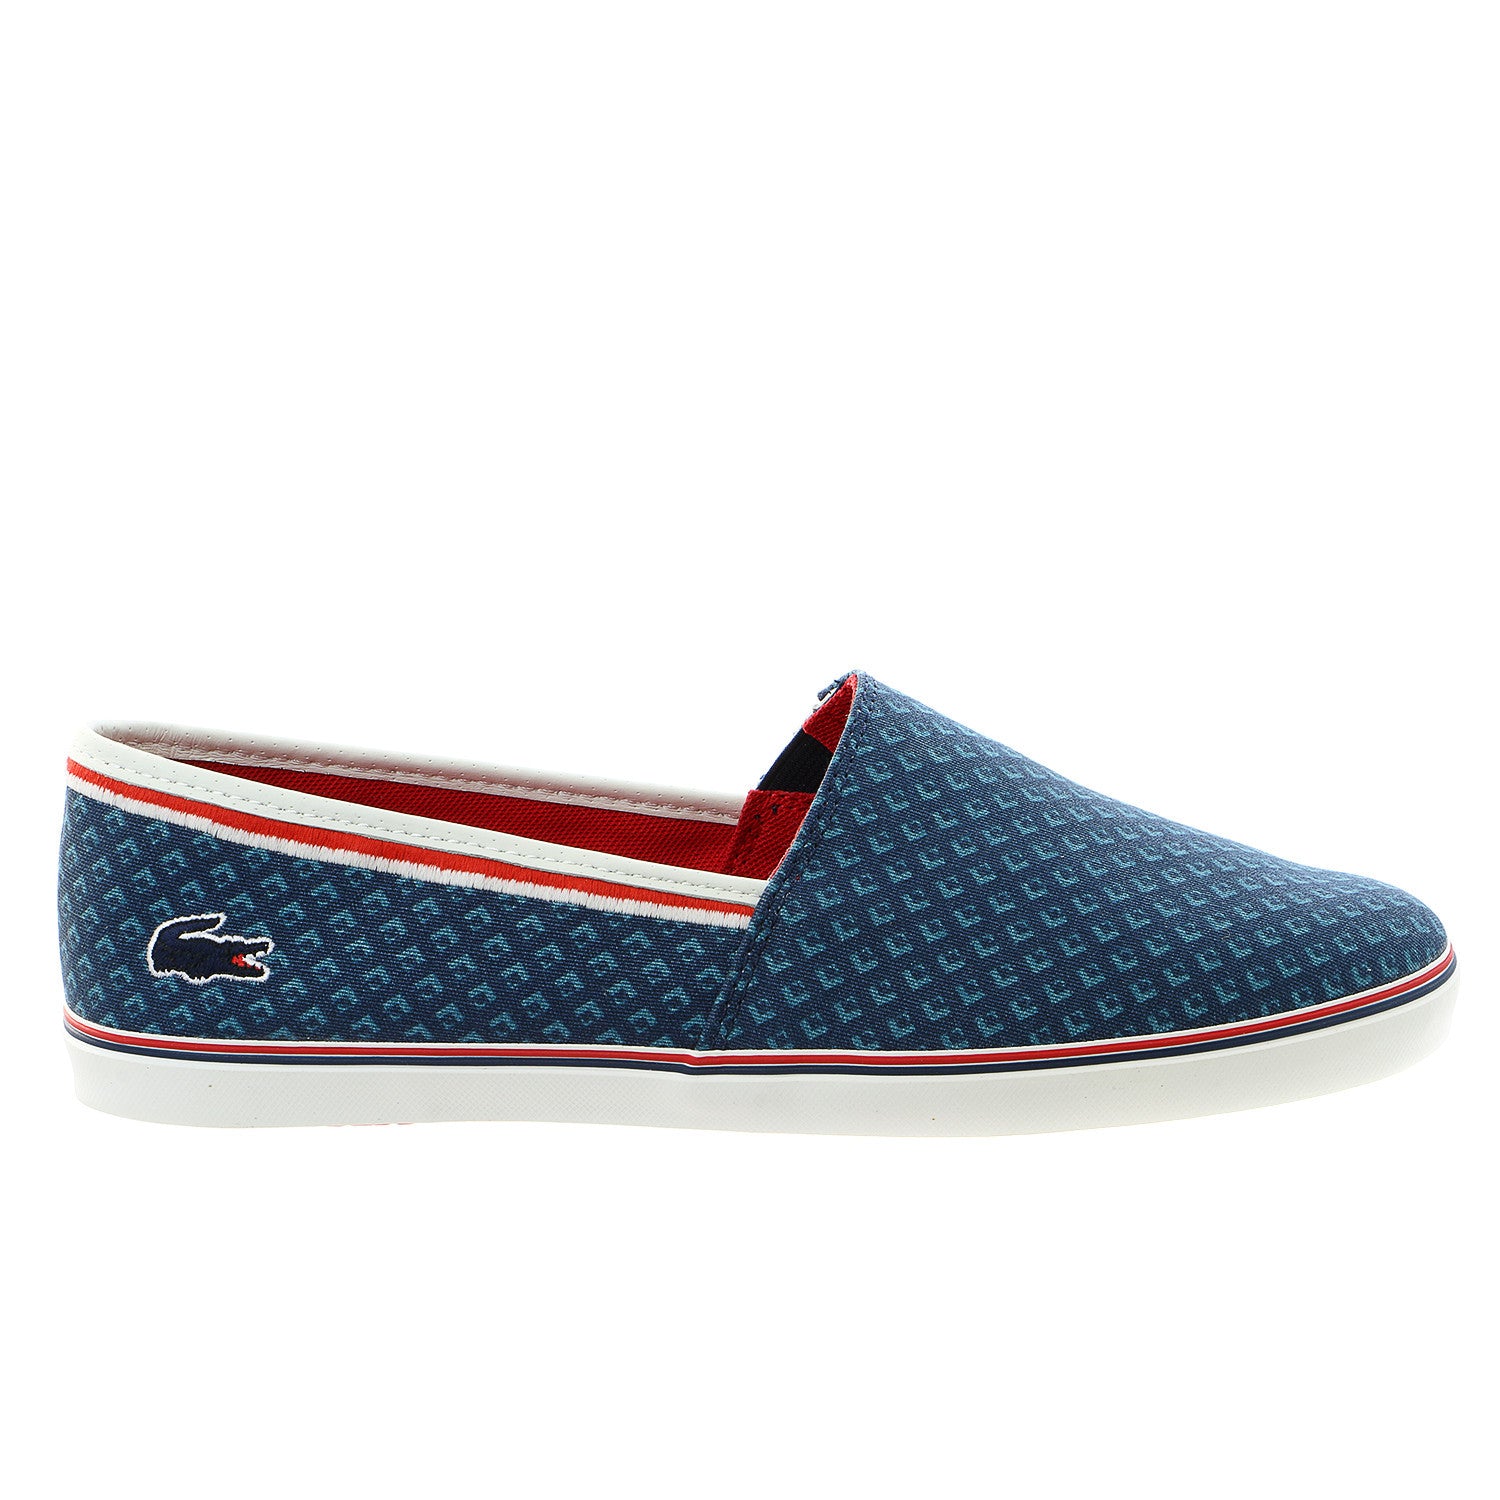 Lacoste Aimard 8 Fashion Sneaker Slip On Shoe - Dark Blue - Mens -